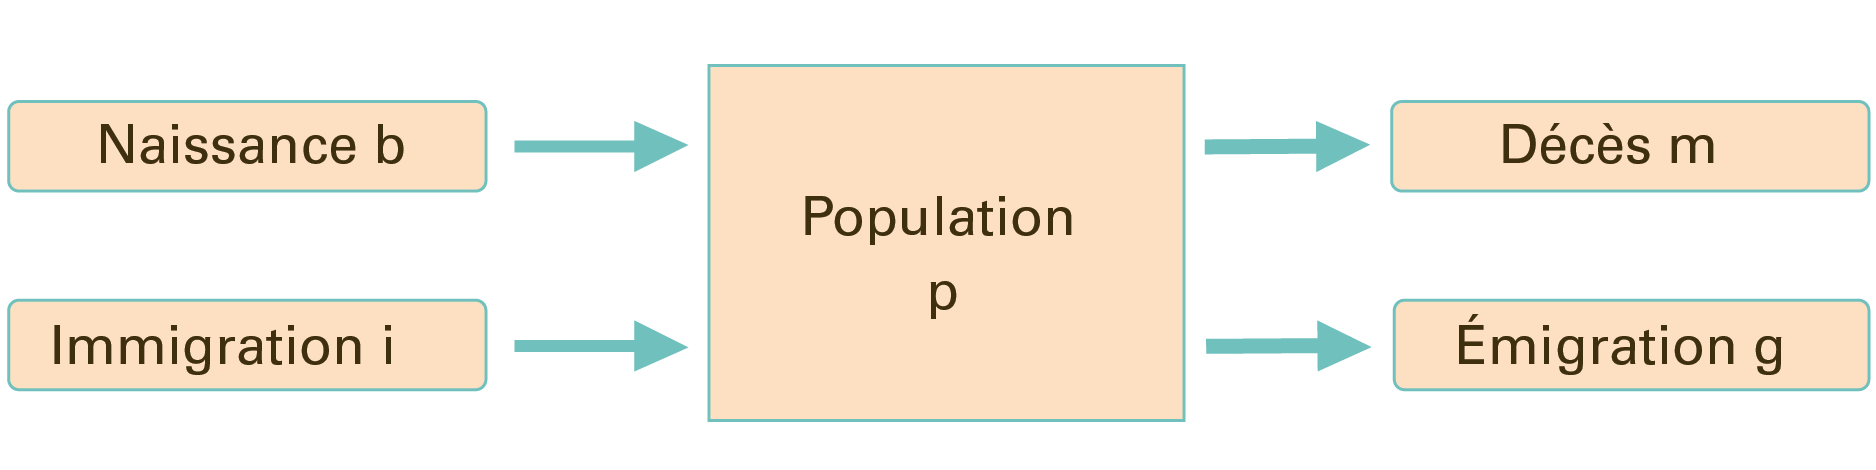 L’image 1 montre que les naissances et l'immigration augmentent le compartiment démographique, tandis que la mort et l'émigration le diminuent.